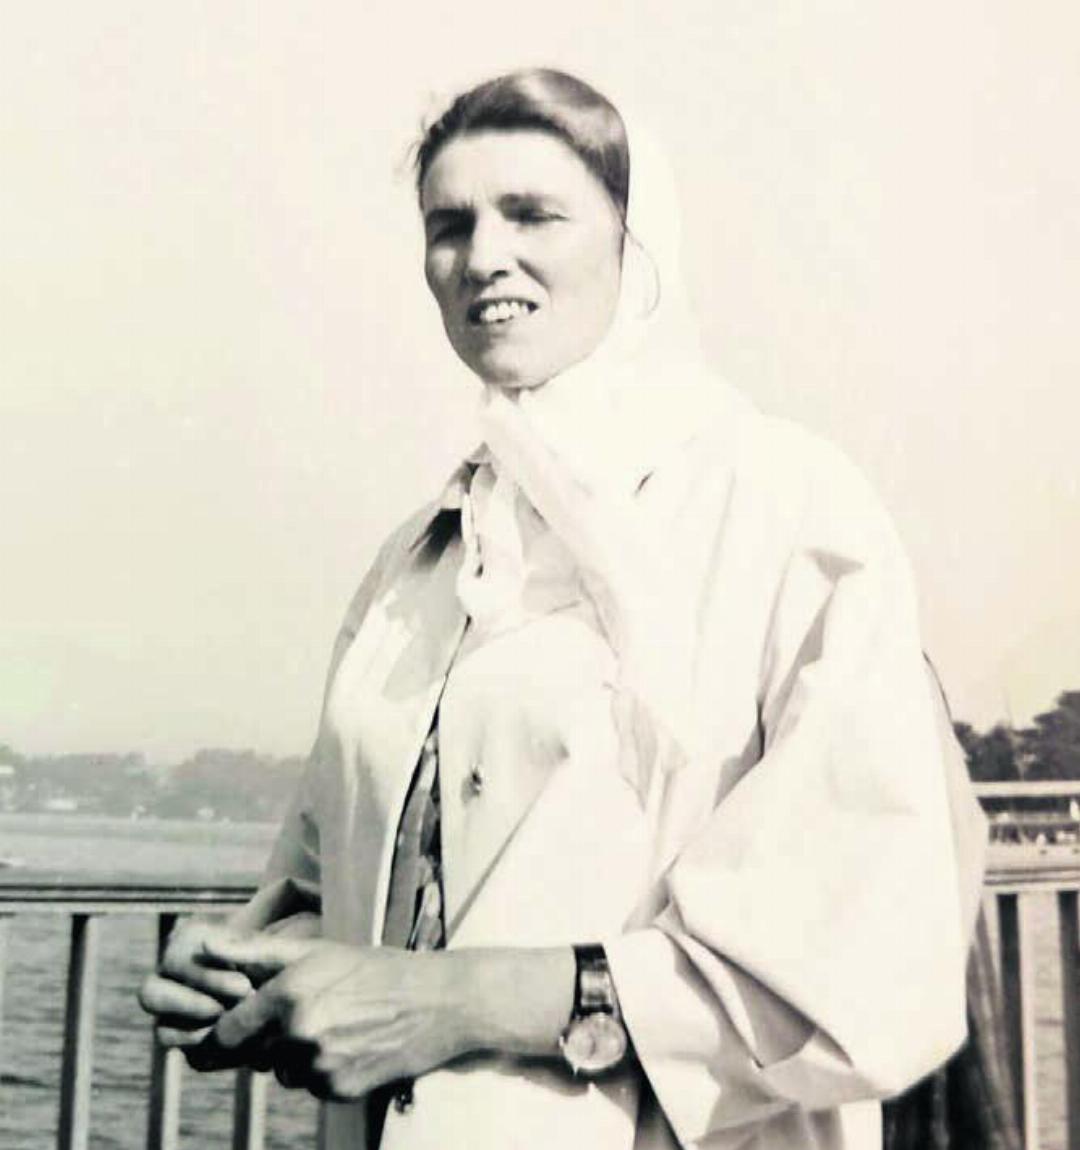 Johanna Knecht bei einem Ausflug in Luzern auf einem Dampfschiff im Jahr 1965. Ausflüge und Reisen waren ihr zeitlebens ein grosses Hobby.